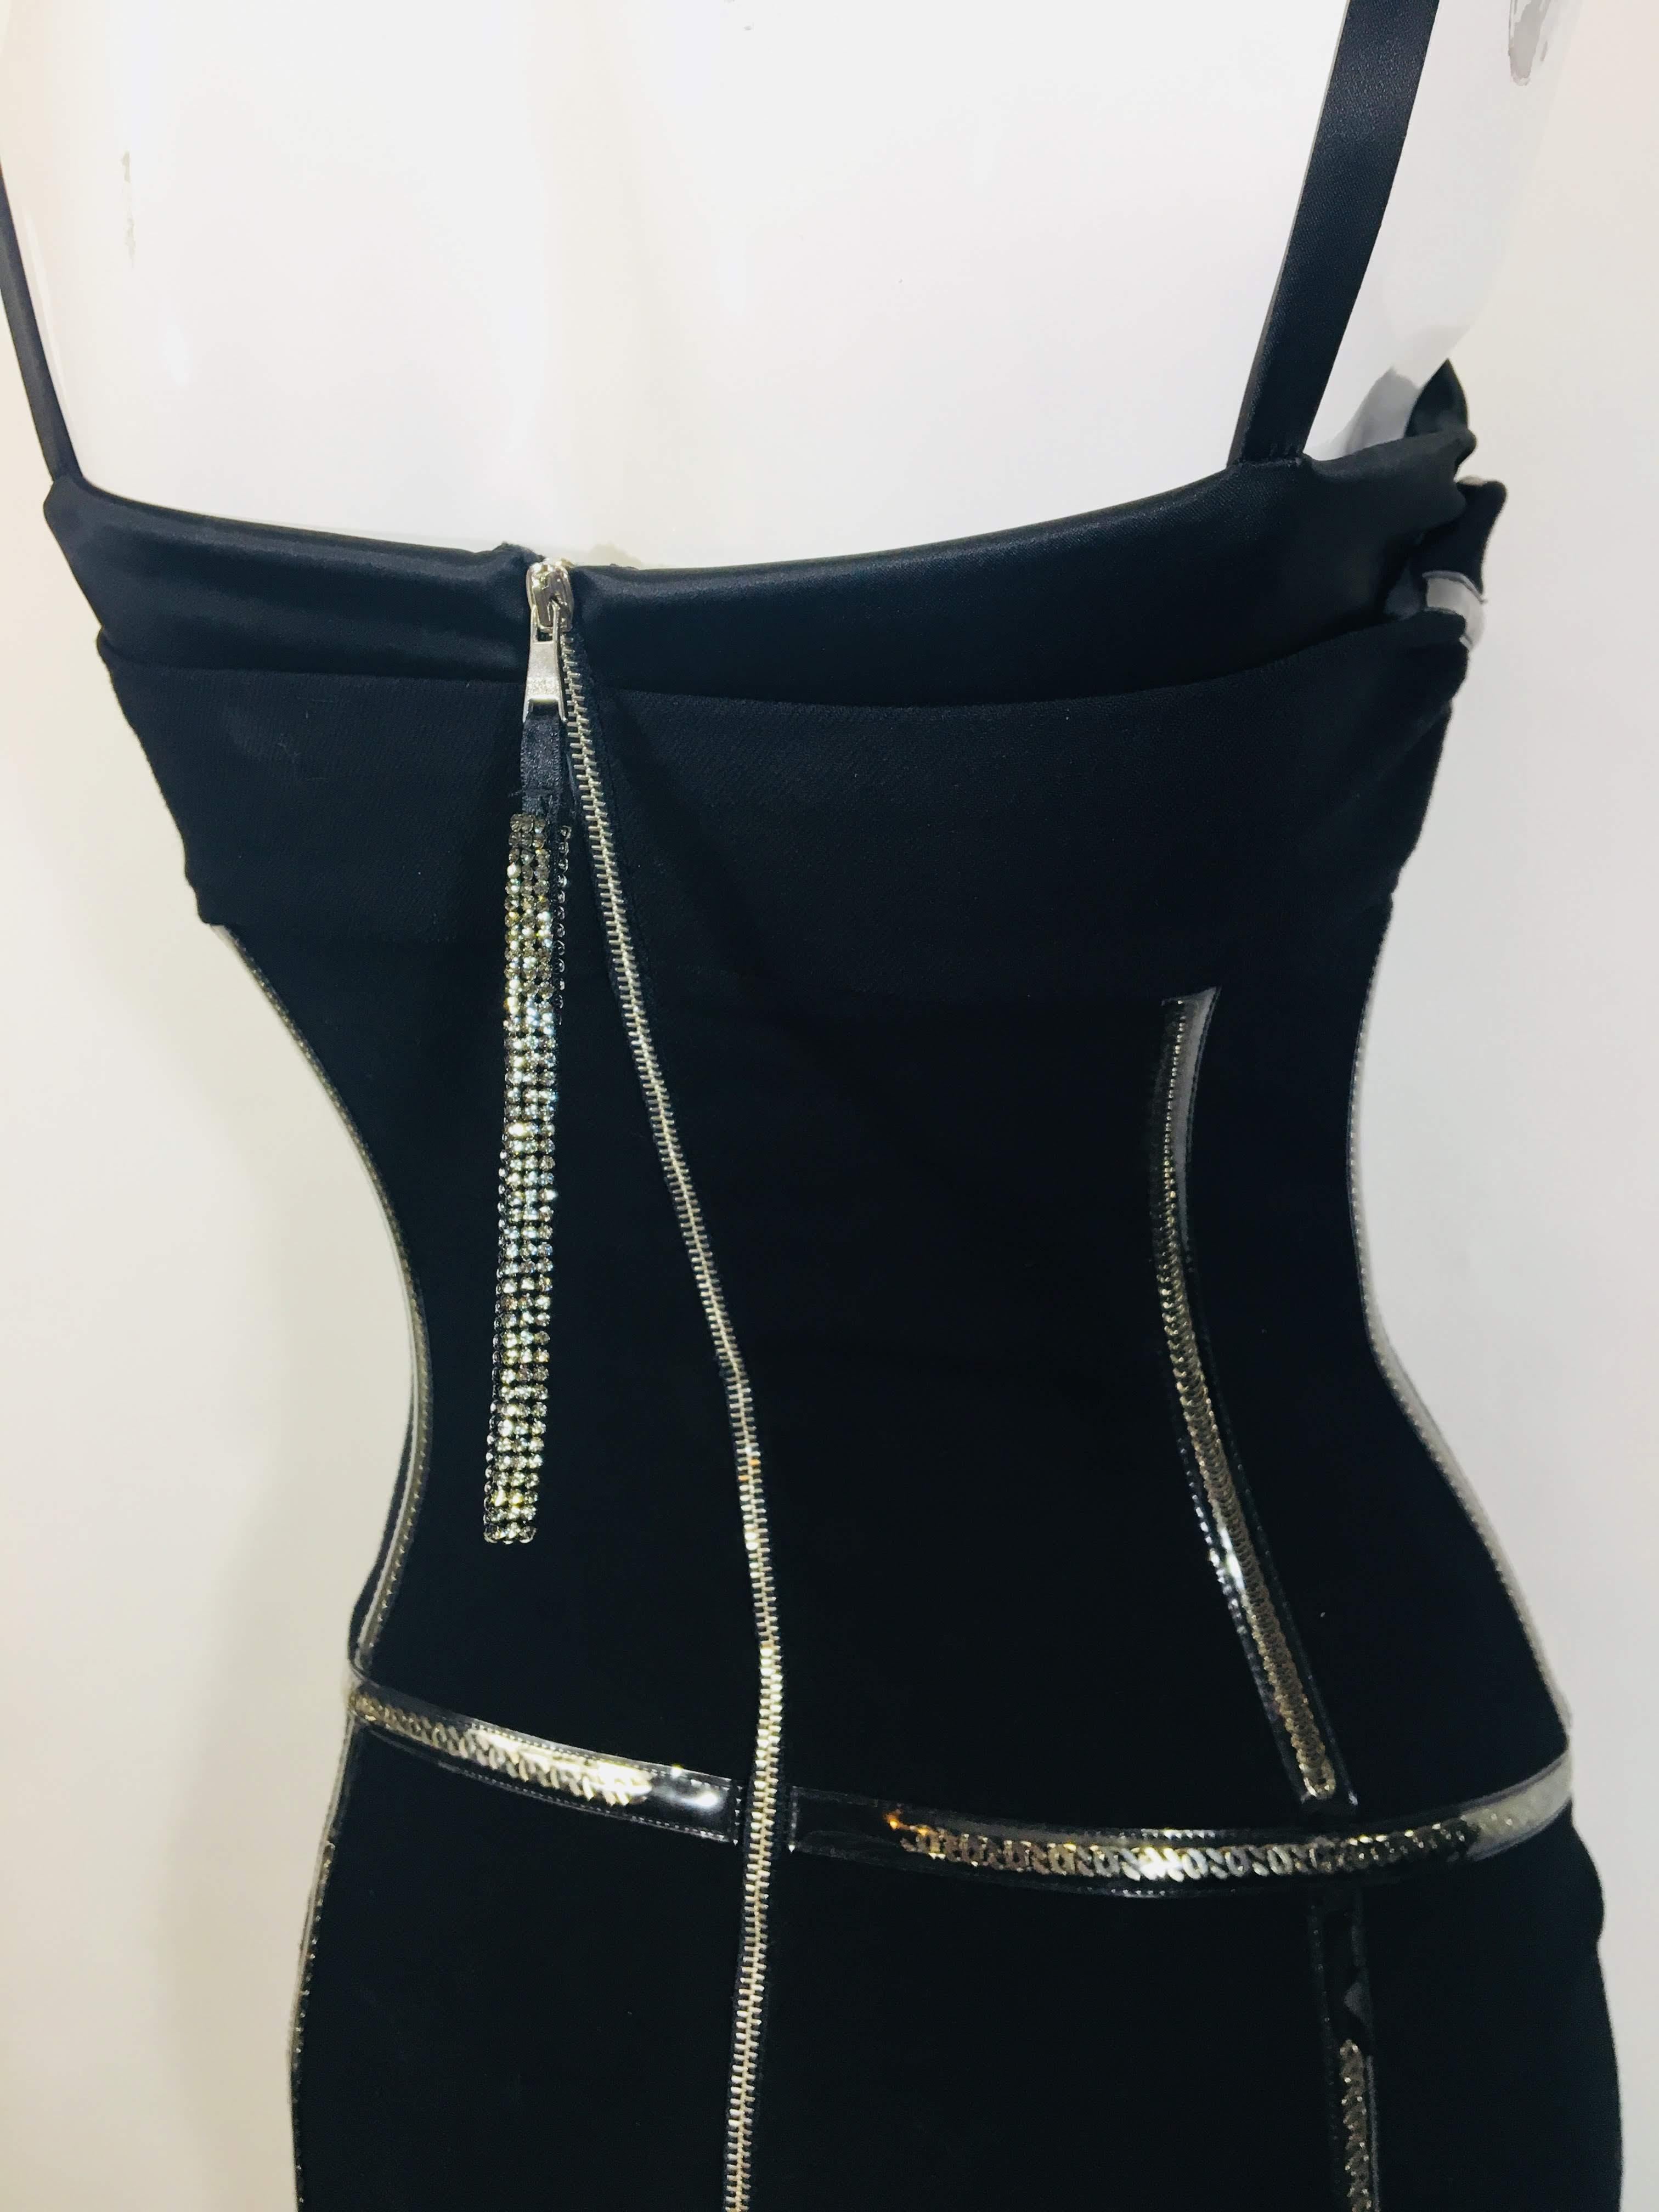 Dolce & Gabbana Black Sheath Dress 8